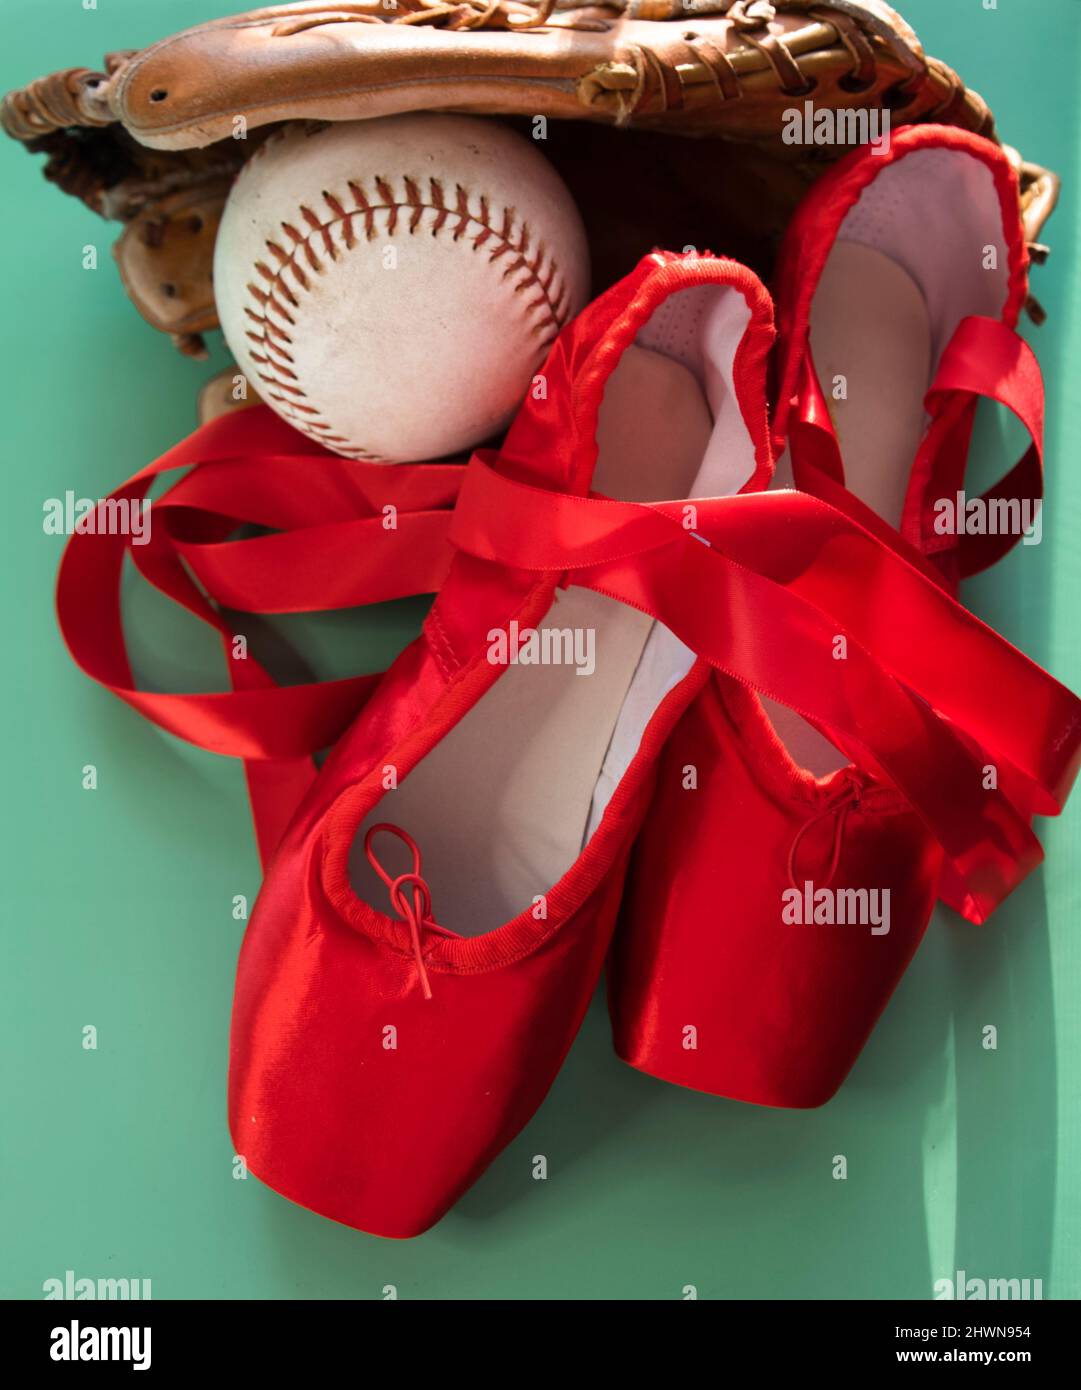 Leuchtend rote Ballet spitzenschuhe, gruppiert mit Softball und Handschuh. Vor blauem oder grünem Hintergrund. Stockfoto